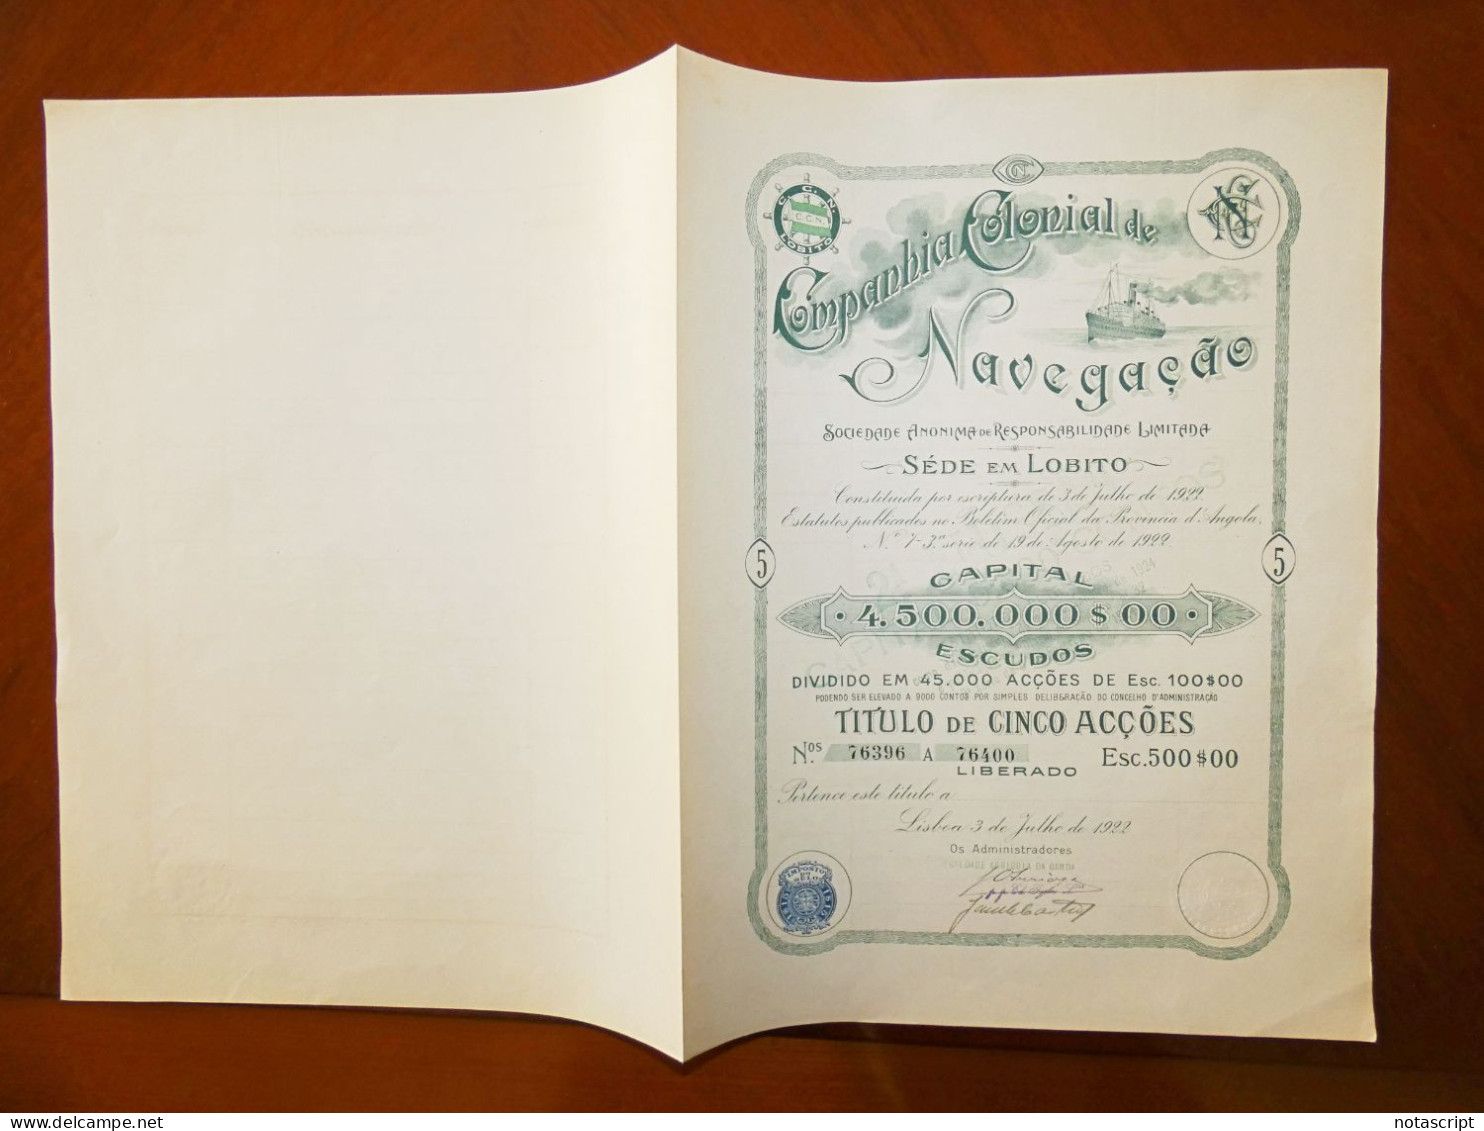 COMPANHIA COLONIAL  DE NAVEGAÇAO SA ,Lobito (Portuguese Angola)  5 Shares Single Certificate  1922 - Navigation